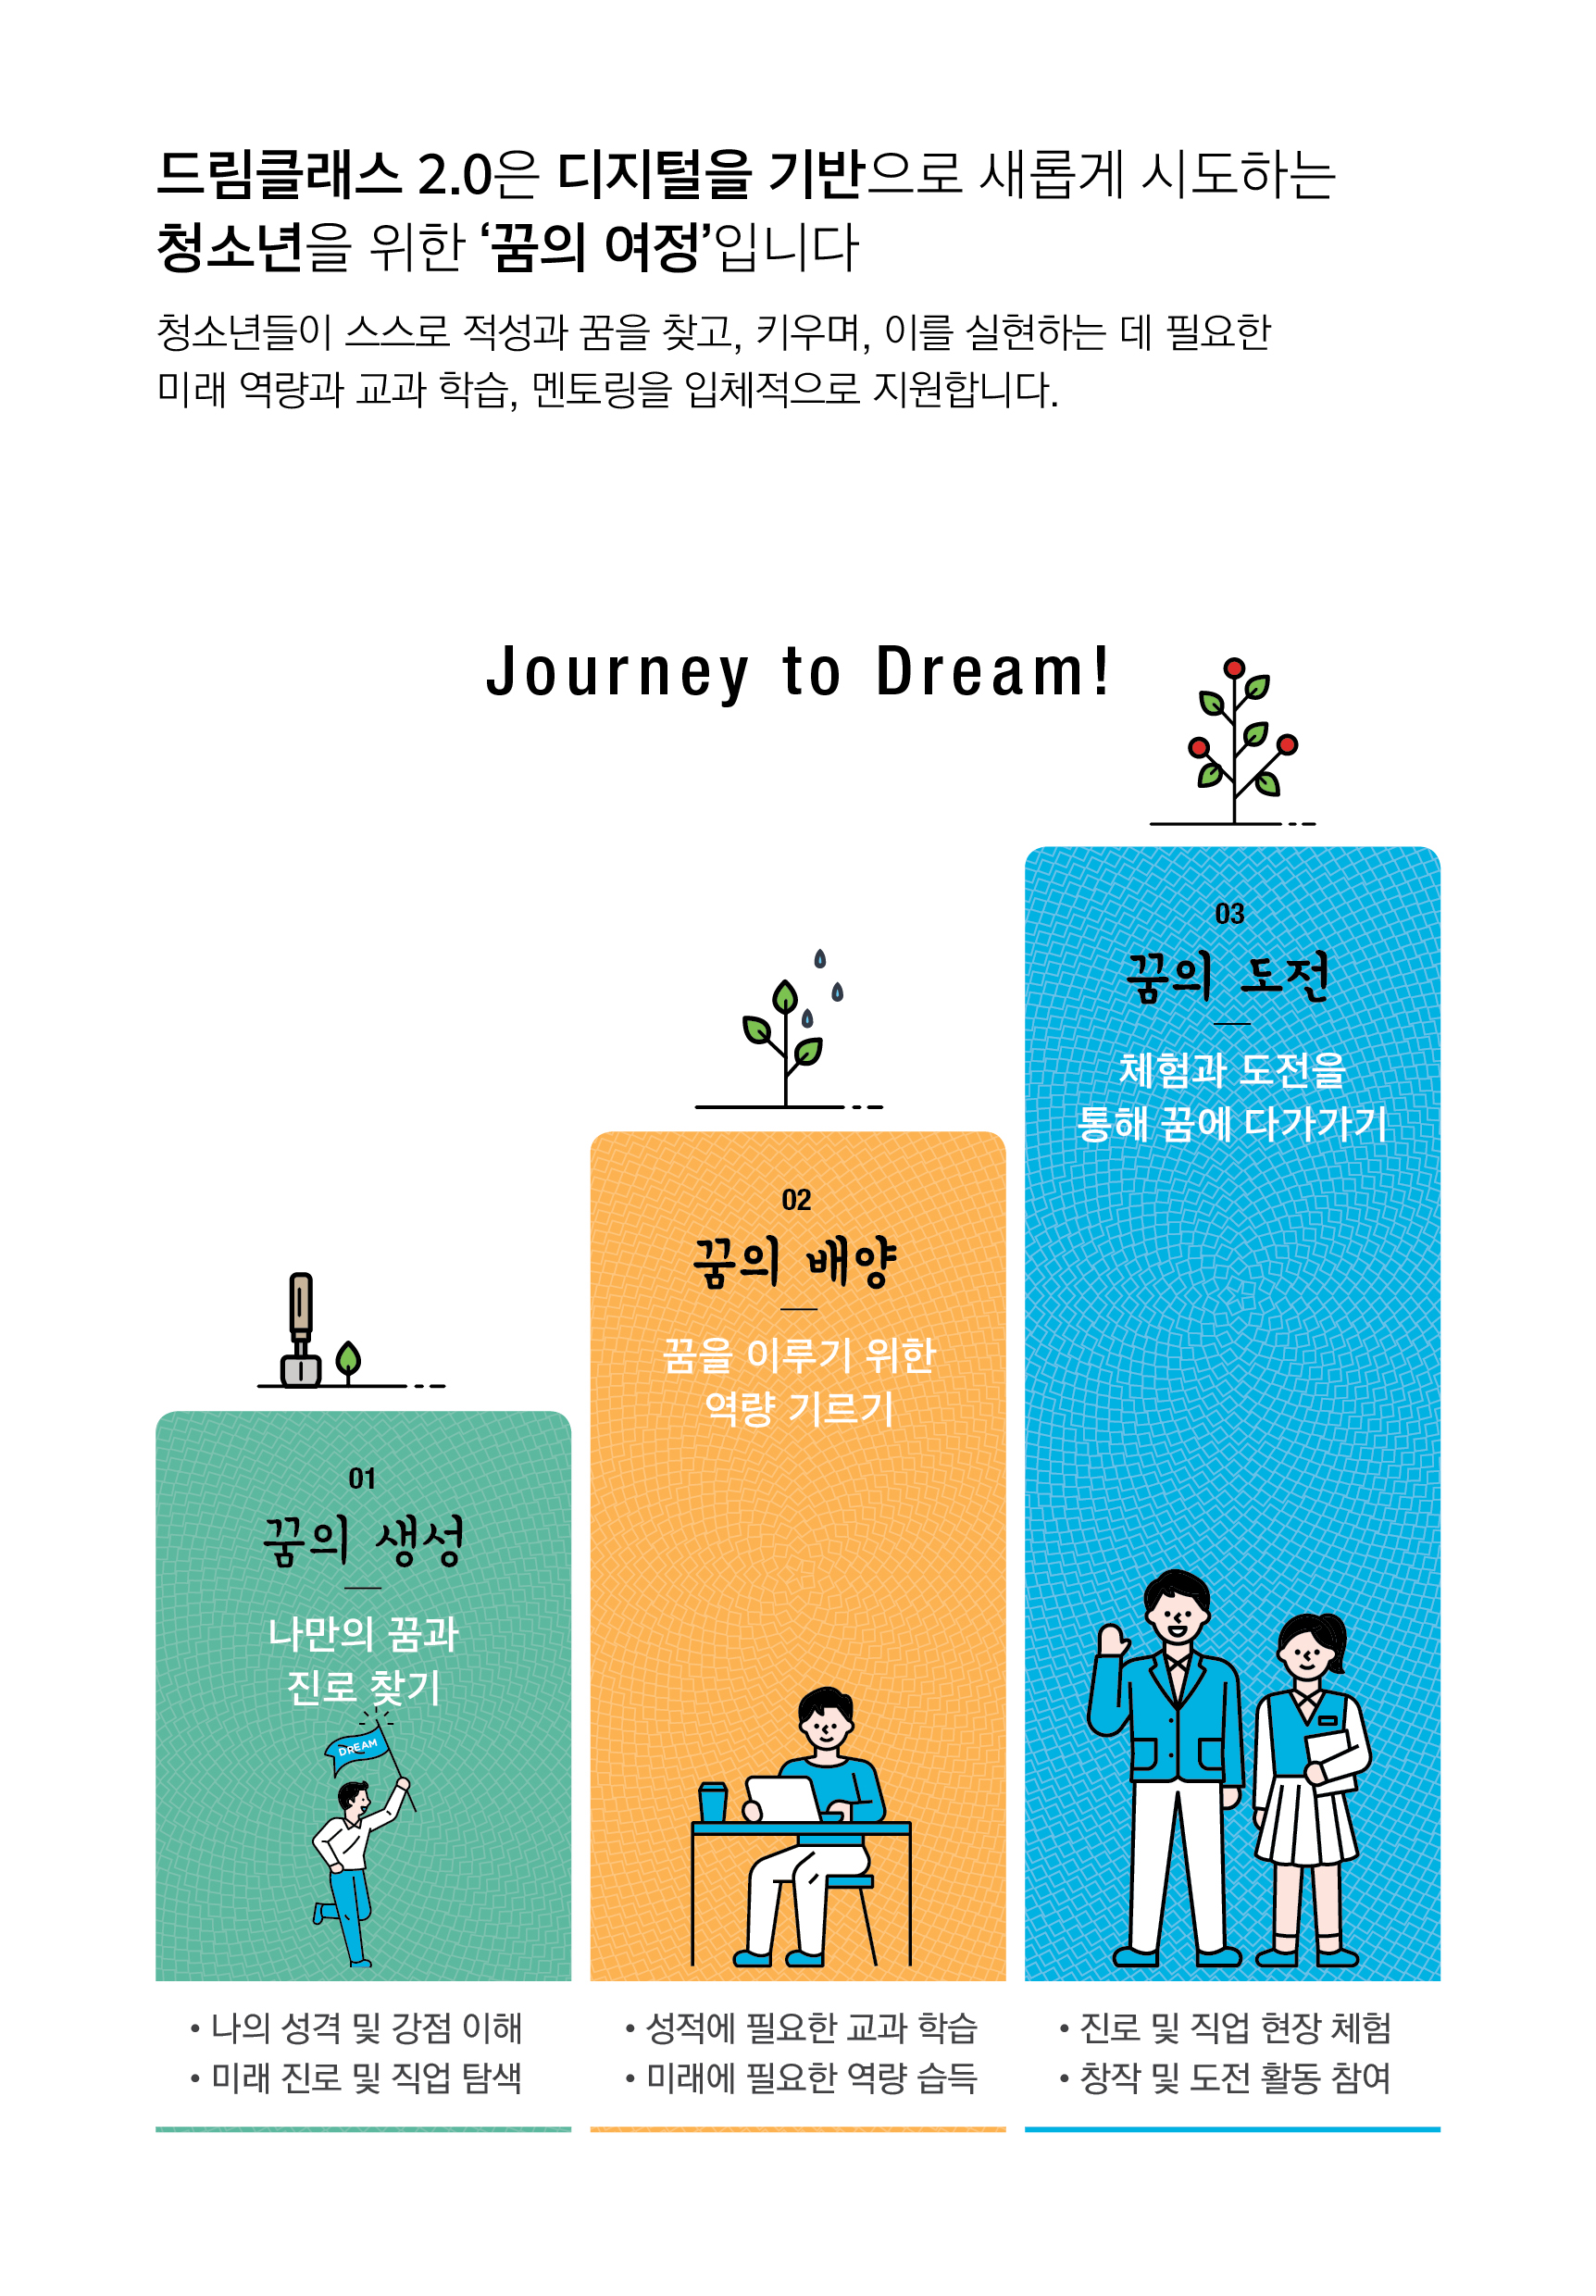 드림클래스 2.0은 디지털을 기반으로 새롭게 시도하는 청소년을 위한 '꿈의 여정'입니다 청소년들이 스스로 적성과 꿈을 찾고, 키우며, 이를 실현하는 데 필요한 미래 역량과 교과 학습, 멘토링을 입체적으로 지원합니다. Journey to Dream! 01 꿈의 생성 나만의 꿈과 진로 찾기 02 꿈의 배양 꿈을 이루기 위한 역량 기르기 03 꿈의 도전 체험과 도전을 통해 꿈에 다가가기 나의 성격 및 강점 이해 미래 진로 및 직업 탐색 성적에 필요한 교과 학습 미래에 필요한 역량 습득 진로 및 직업 현장 체험 창작 및 도전 활동 참여